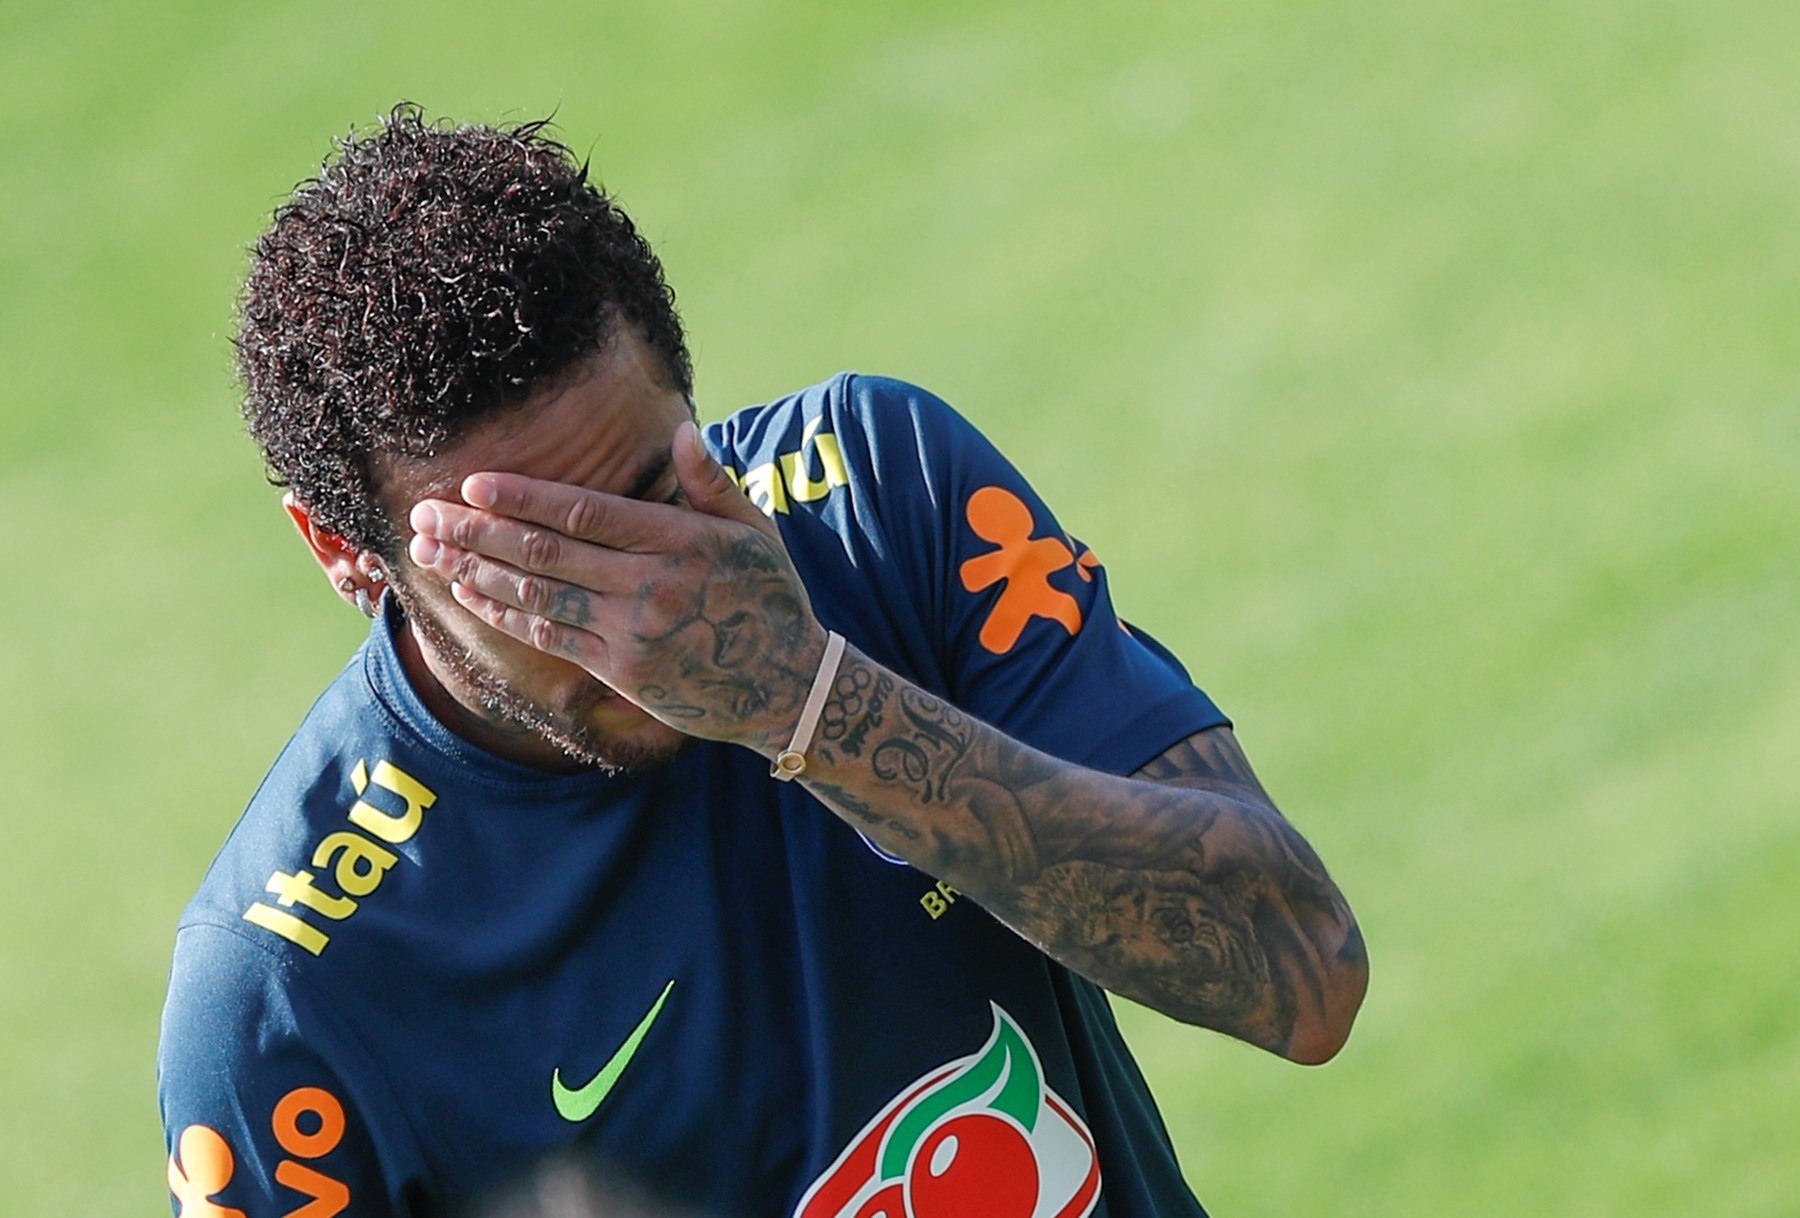 El delantero de la selección brasileña de fútbol, Neymar, participa en un entrenamiento. (Foto Prensa Libre: EFE)